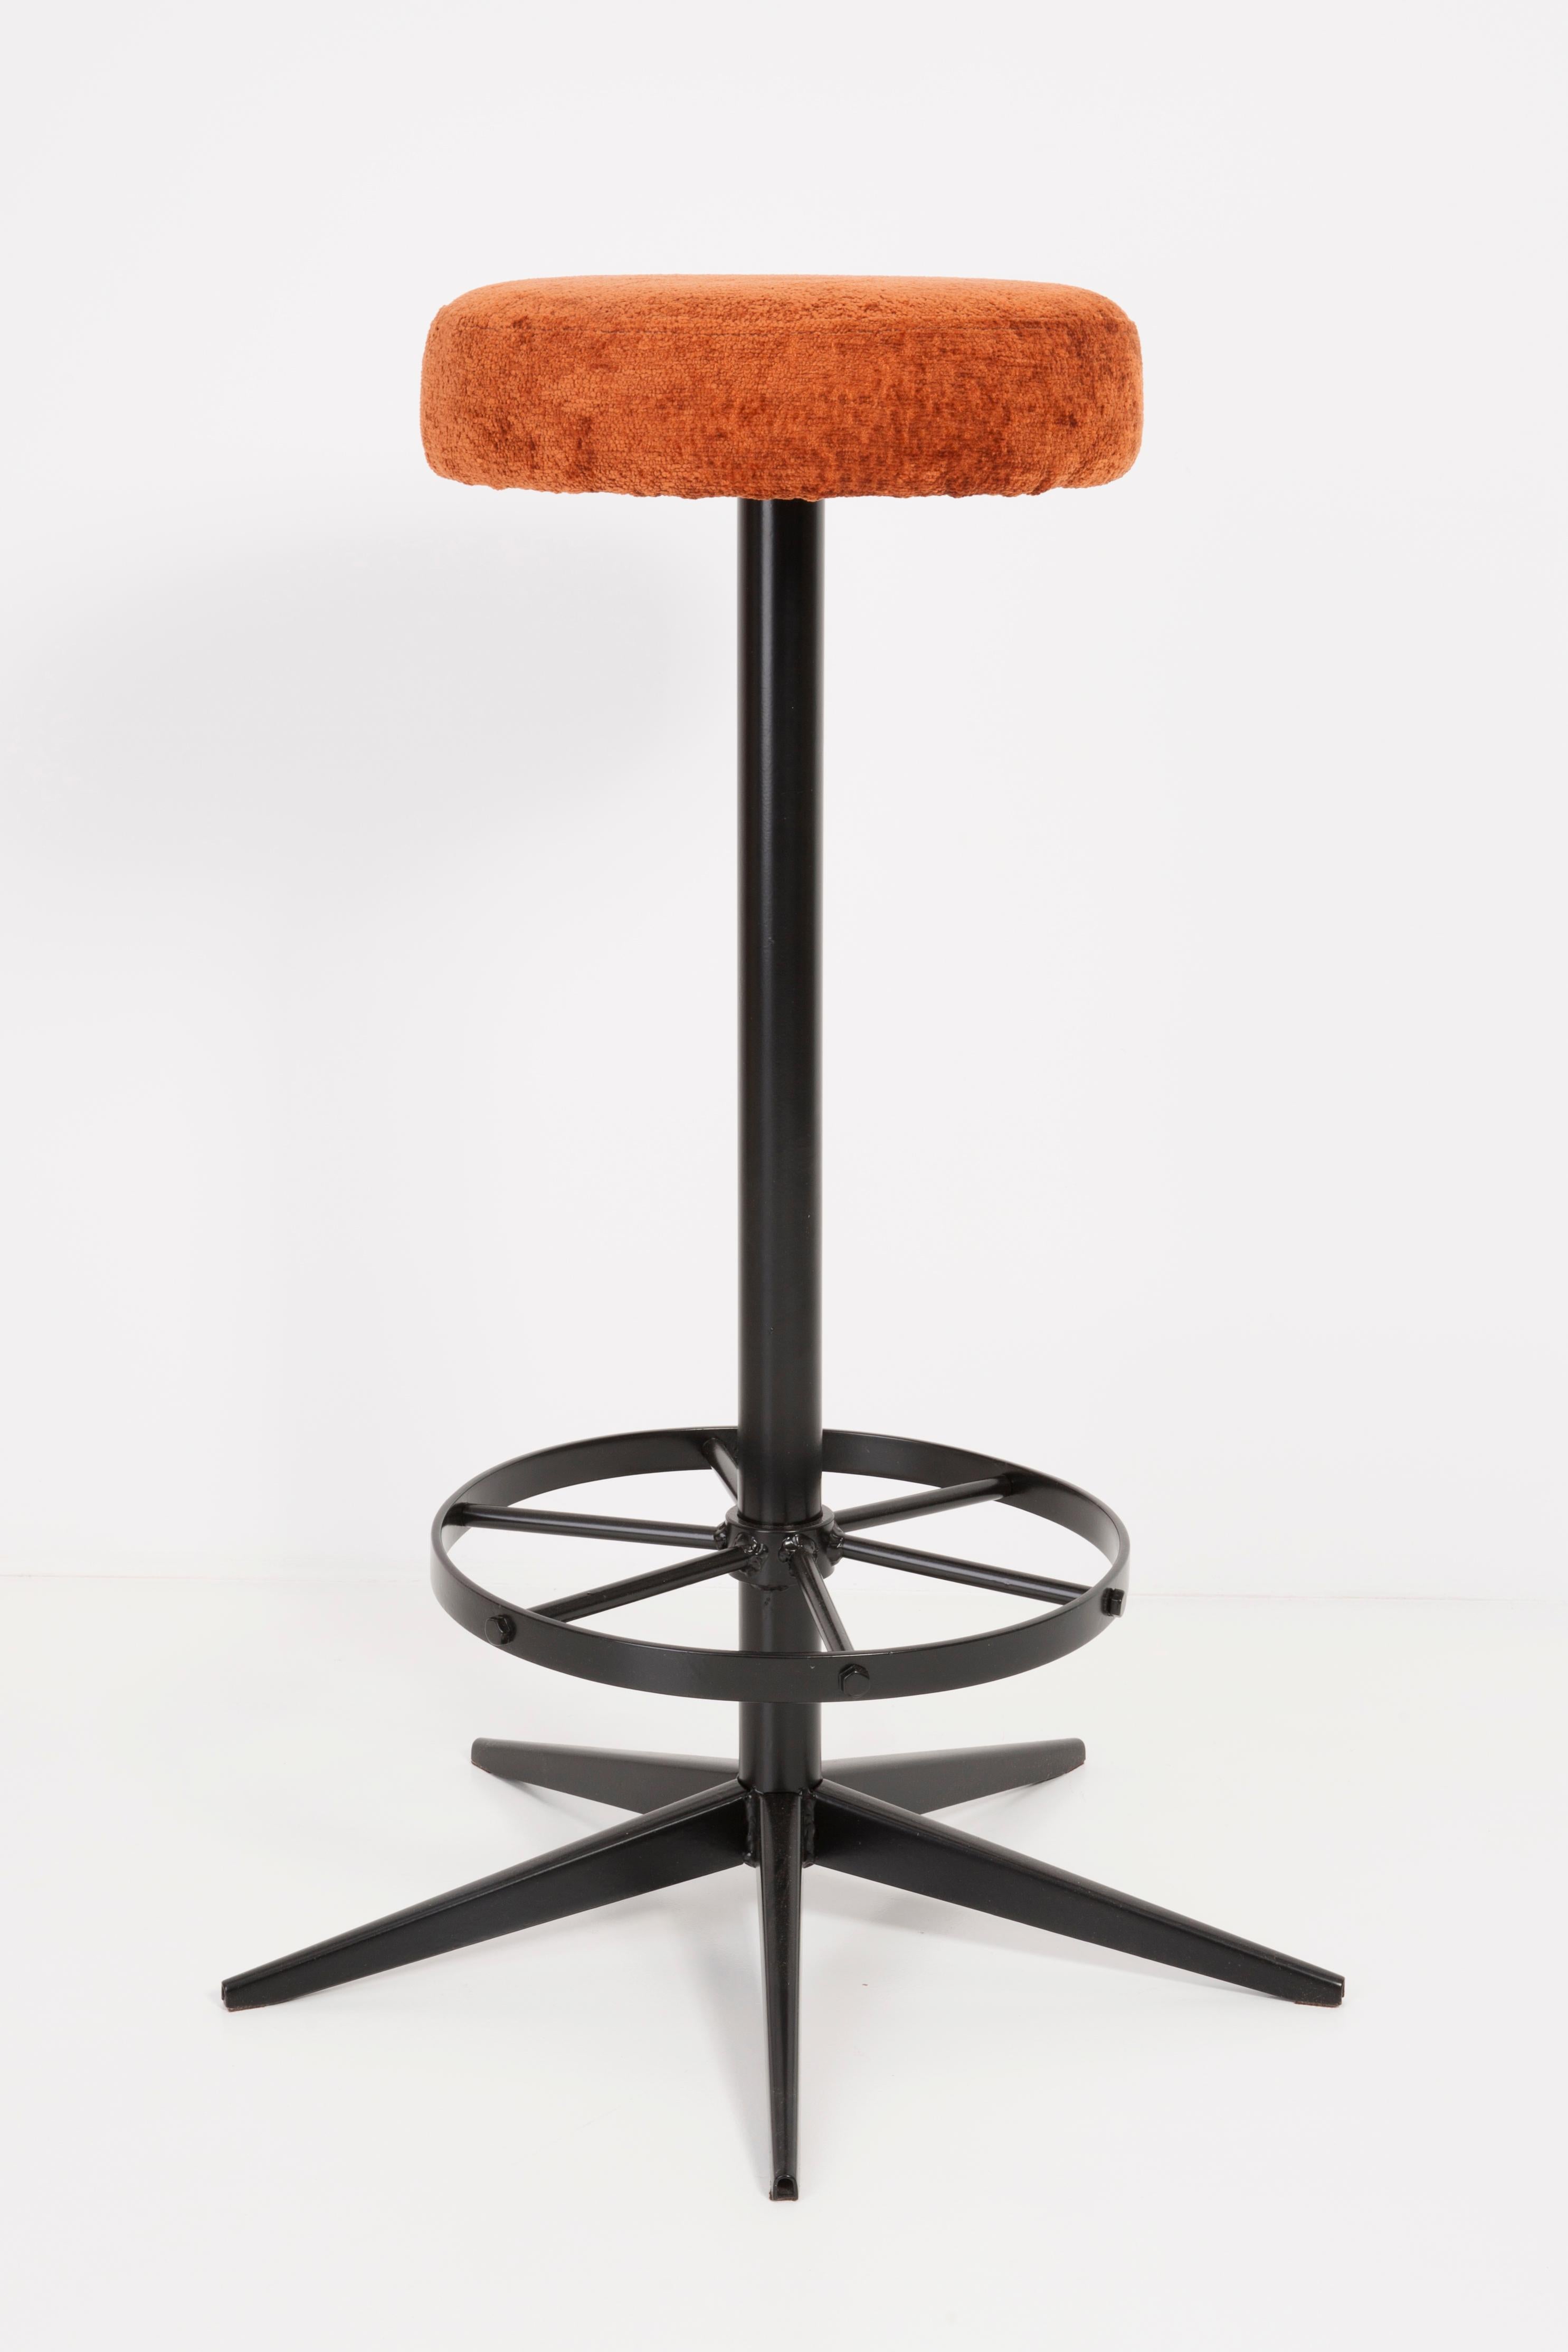 vintage orange bar stools